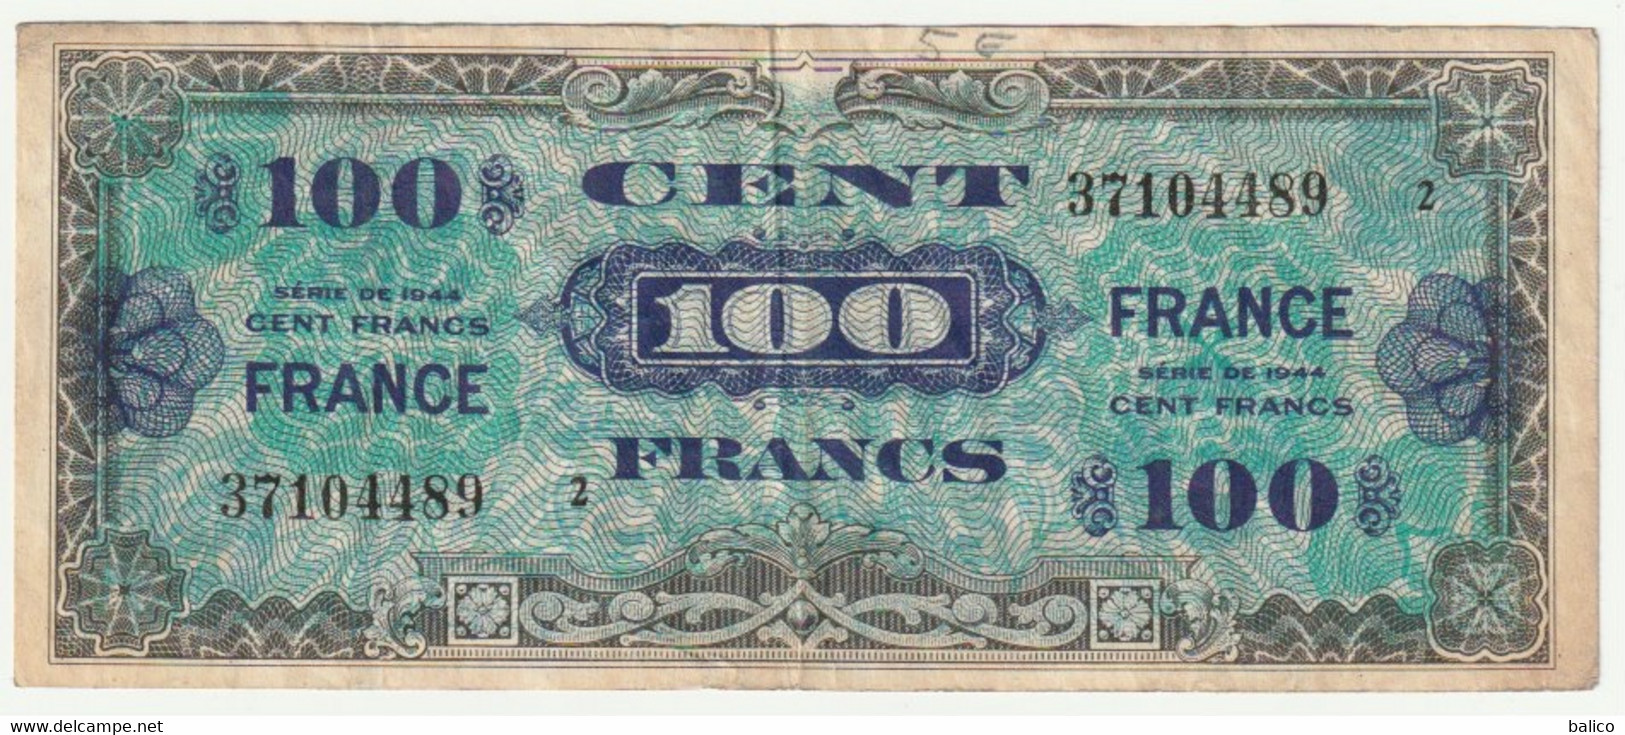 France, 100 Francs   1944   N° 37104489 - 1944 Flagge/Frankreich